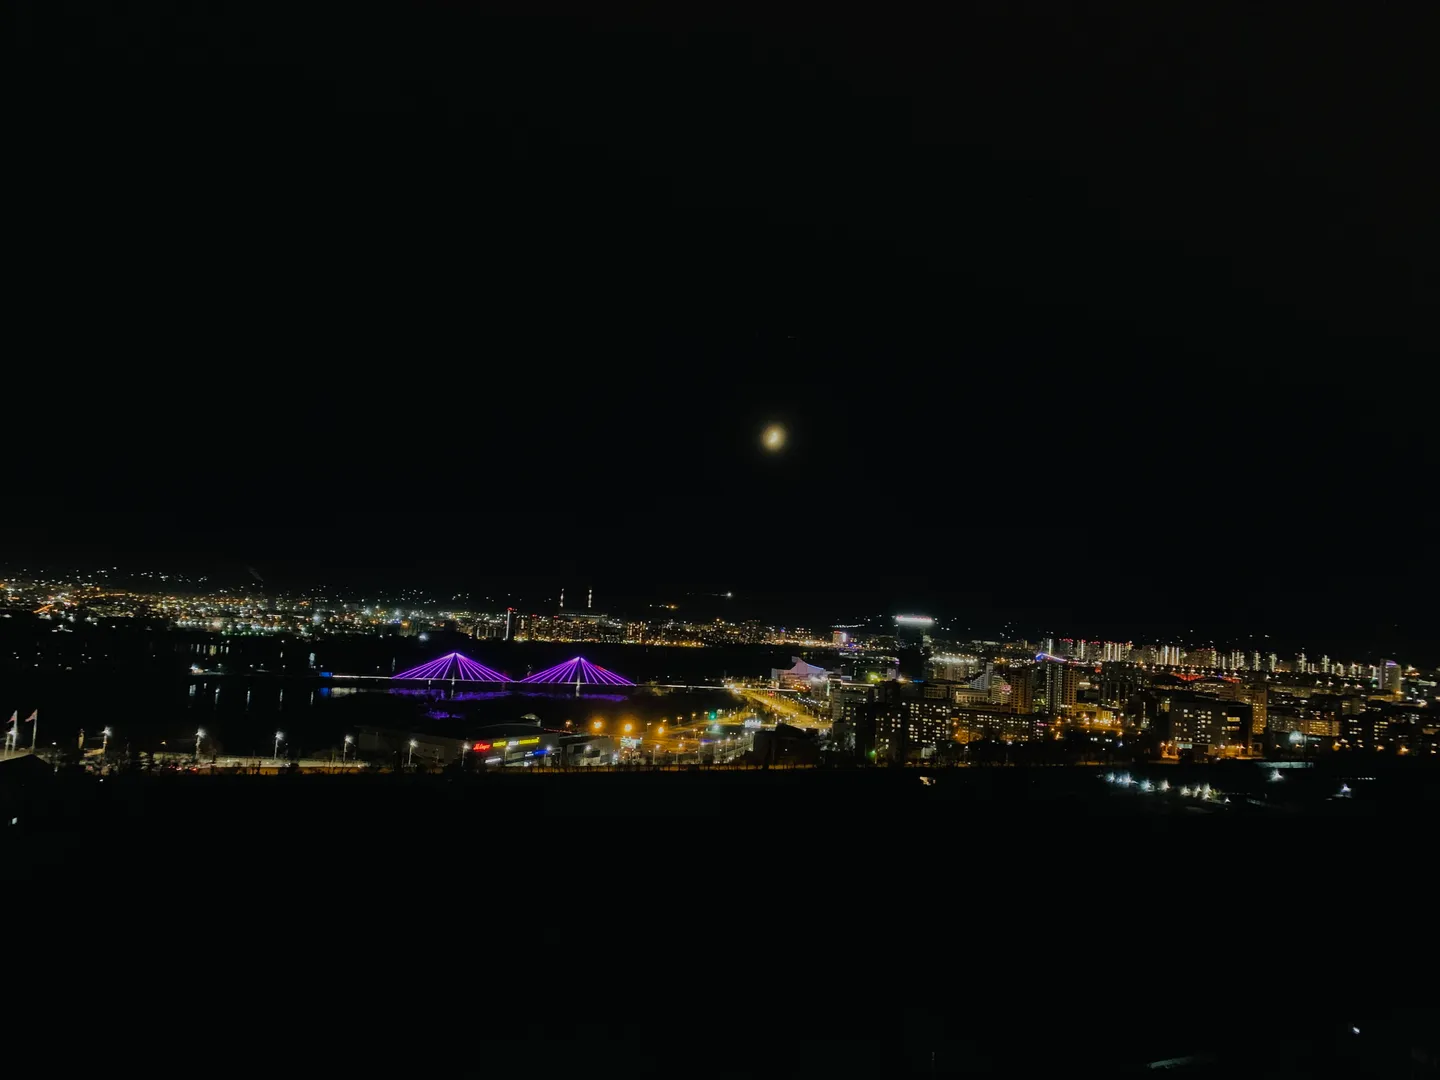 В вечернее время прекрасно видно подсветку и световое шоу на Вантовом мосту и Большом Концертном зале. Ночной центр как на ладони